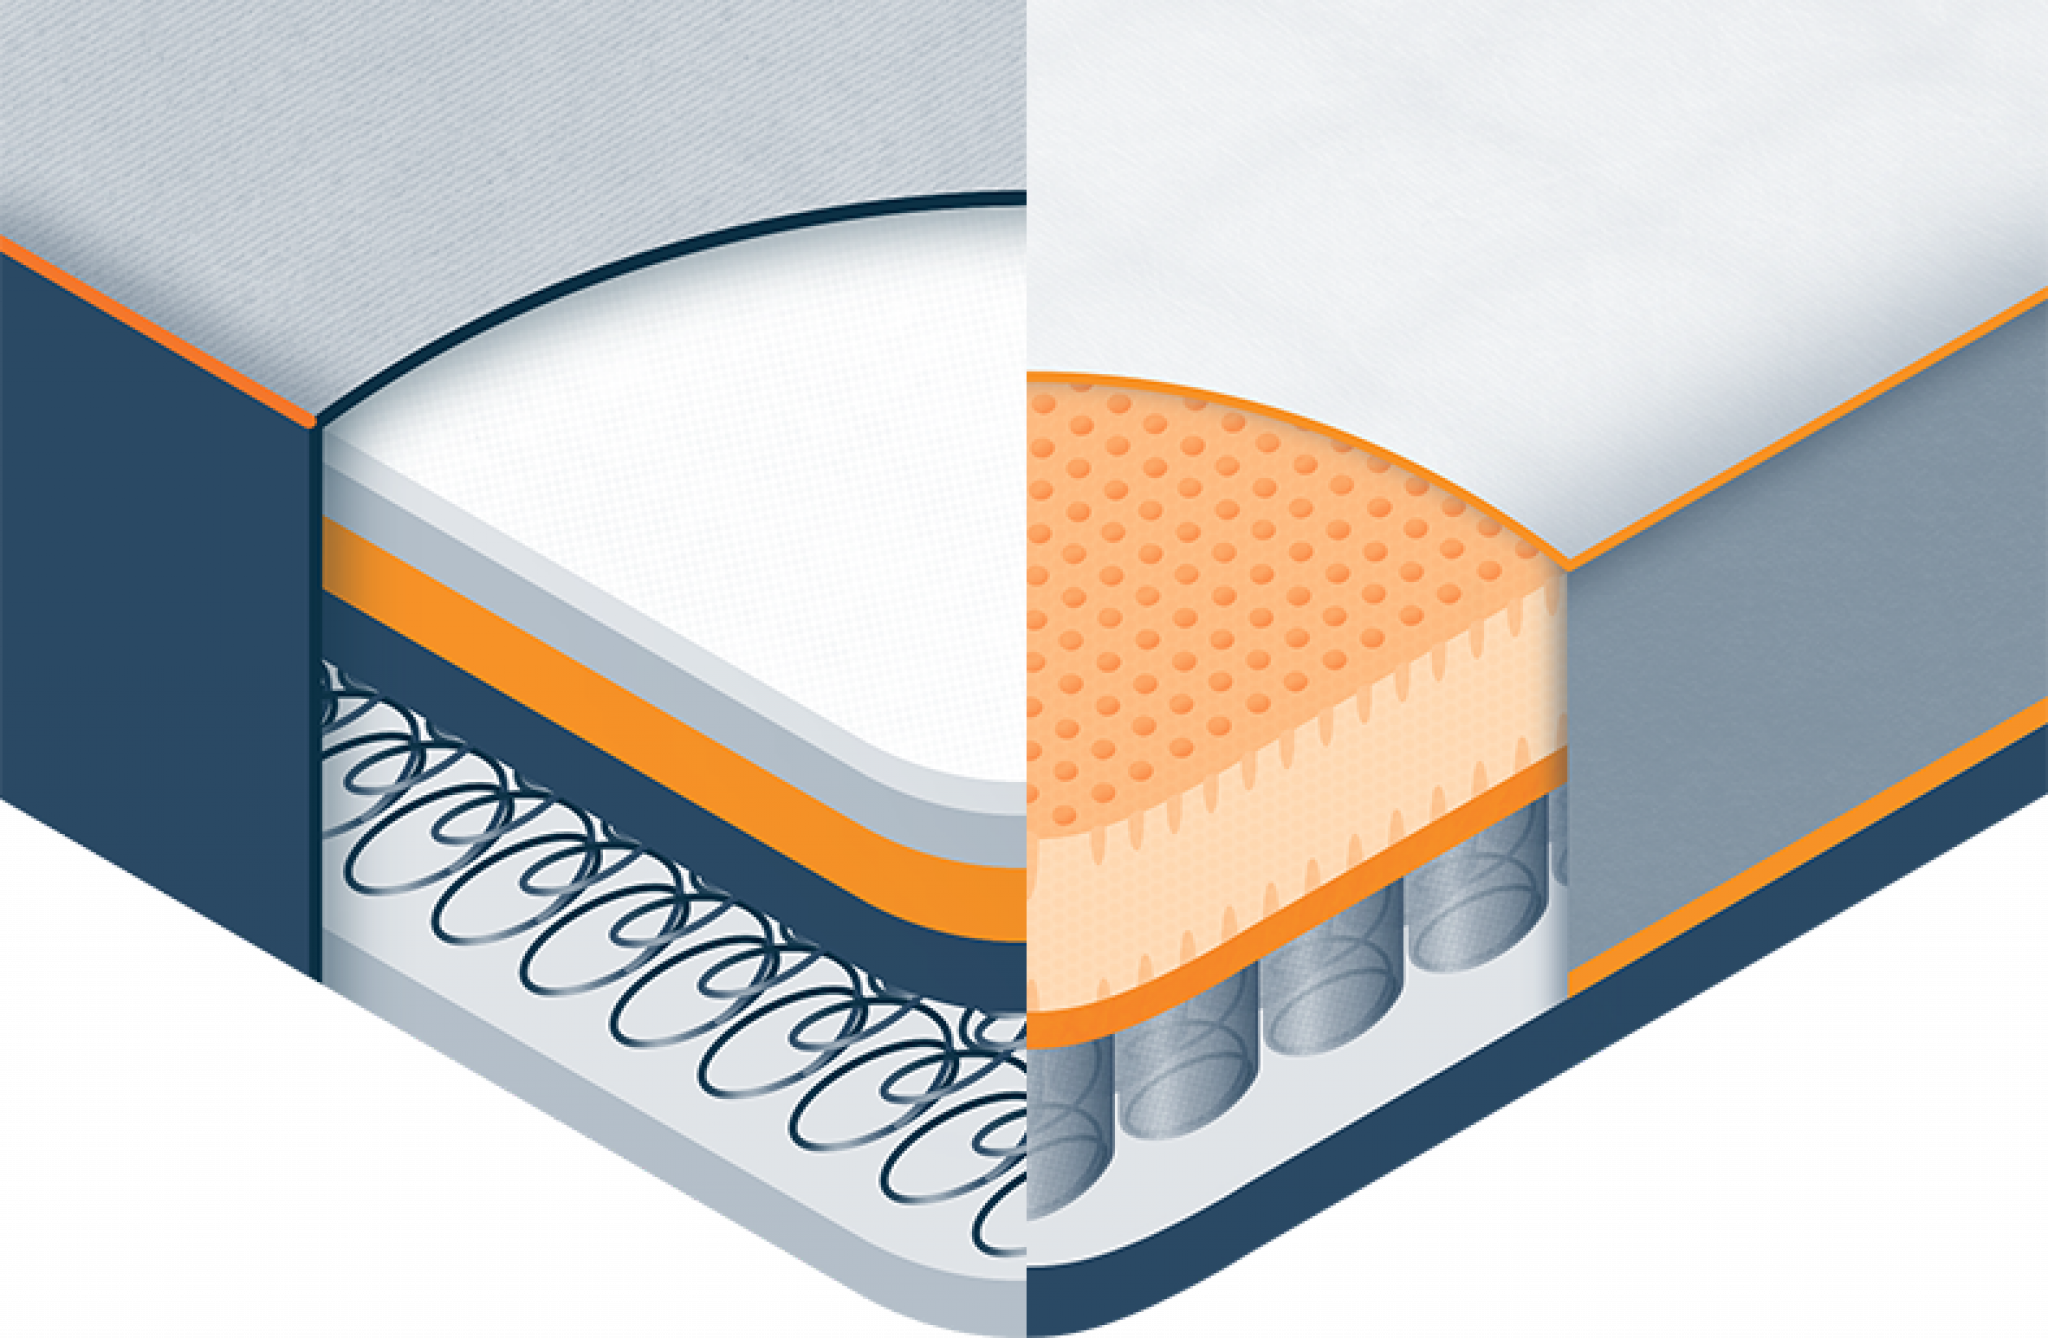 hybrid mattress vs innerspring with topper